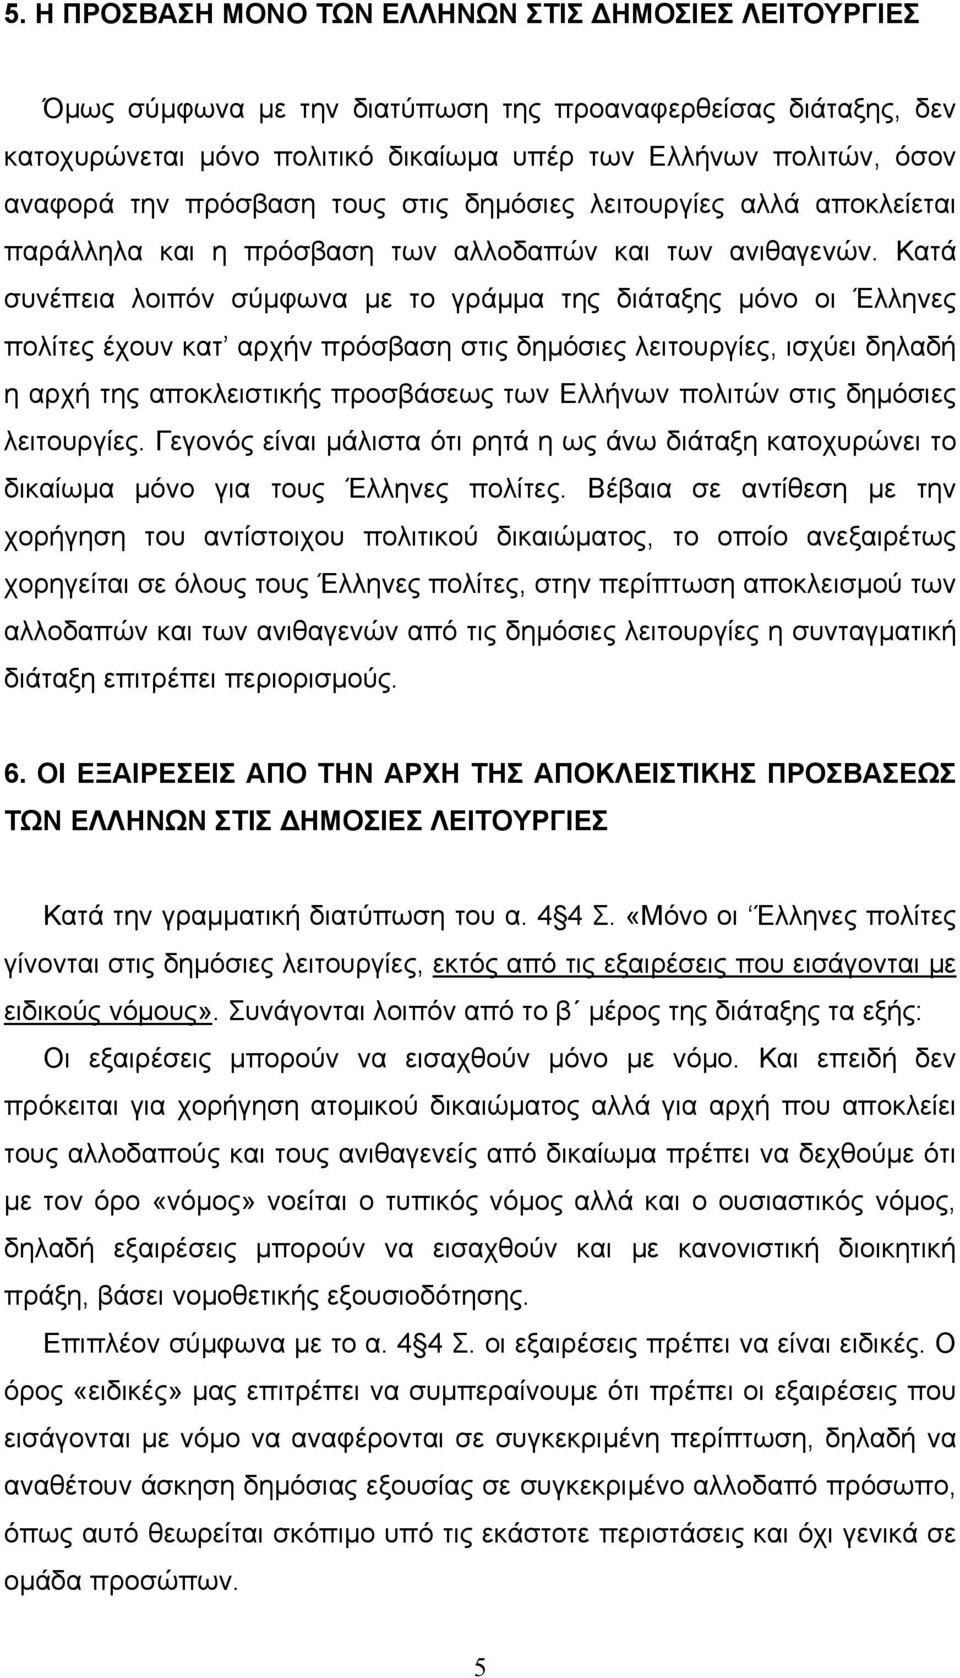 Κατά συνέπεια λοιπόν σύµφωνα µε το γράµµα της διάταξης µόνο οι Έλληνες πολίτες έχουν κατ αρχήν πρόσβαση στις δηµόσιες λειτουργίες, ισχύει δηλαδή η αρχή της αποκλειστικής προσβάσεως των Ελλήνων